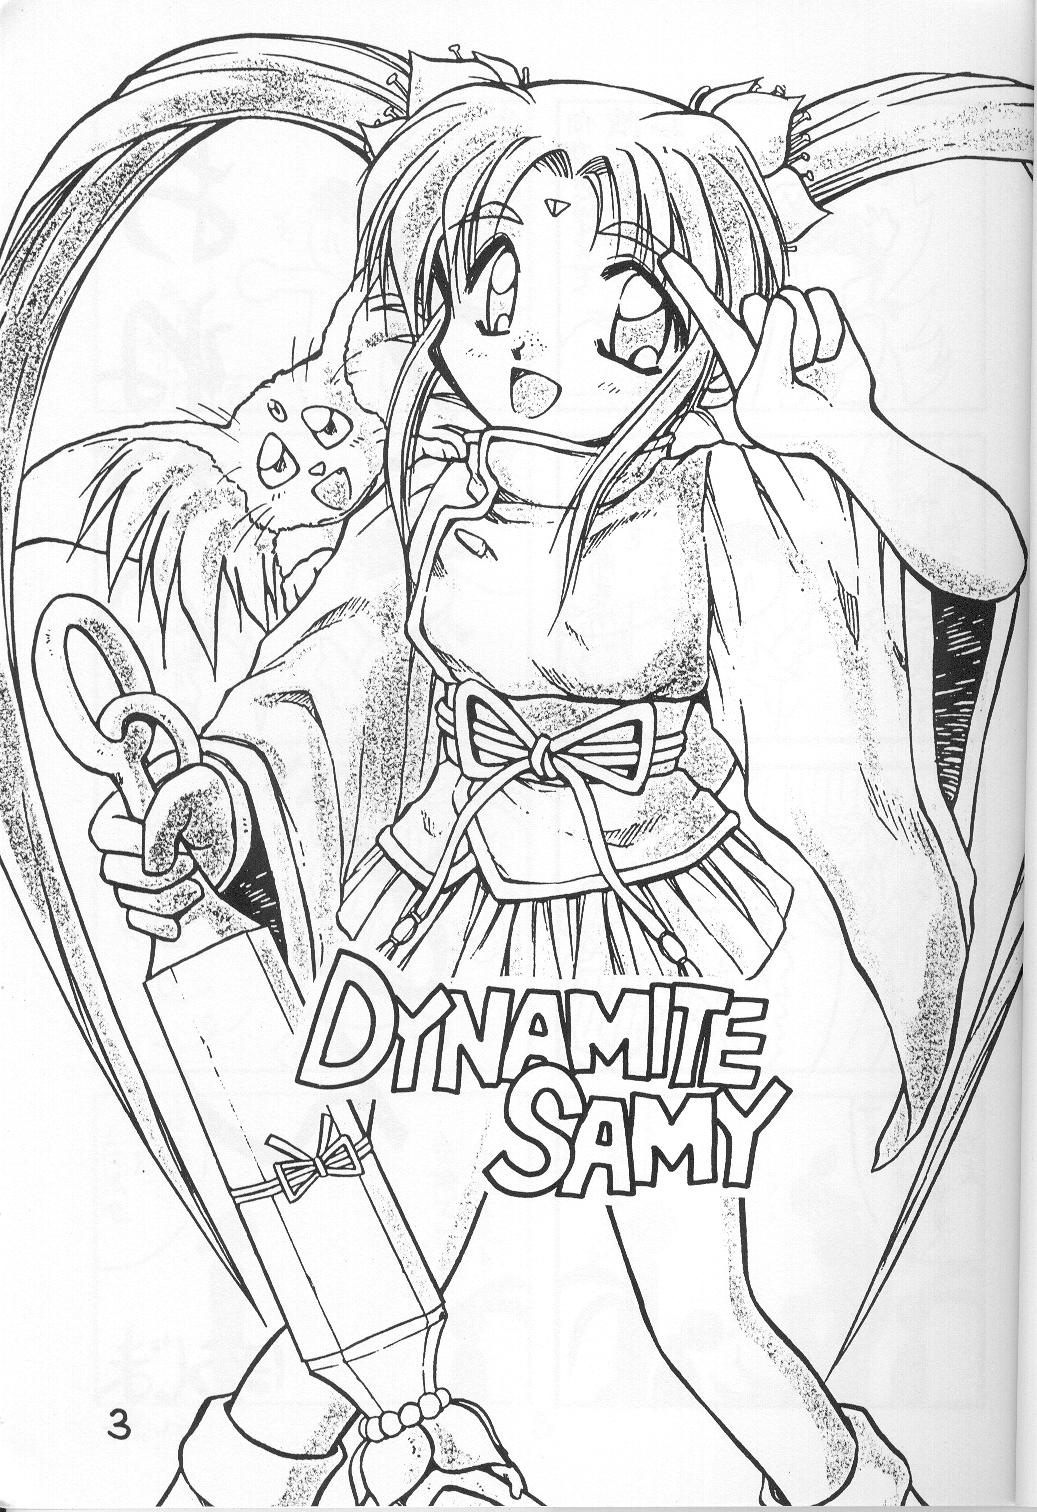 Dynamite Samy 1 2